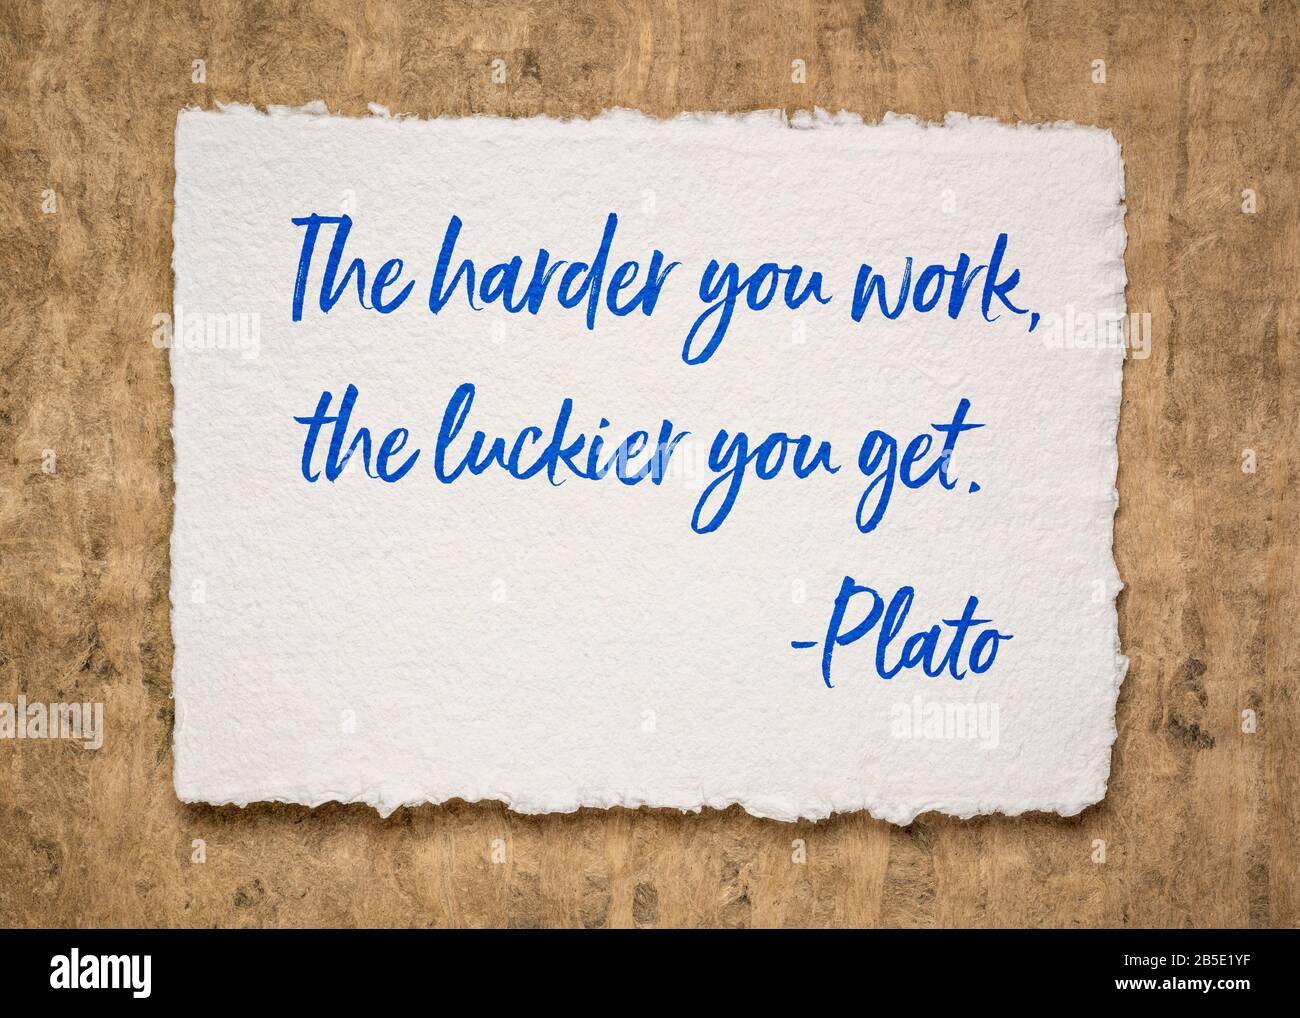 Più lavori duro, più fortunato si ottiene - citazione motivazionale dell'antico filosofo greco Platone, ispirazione, educazione e sviluppo personale conc Foto Stock